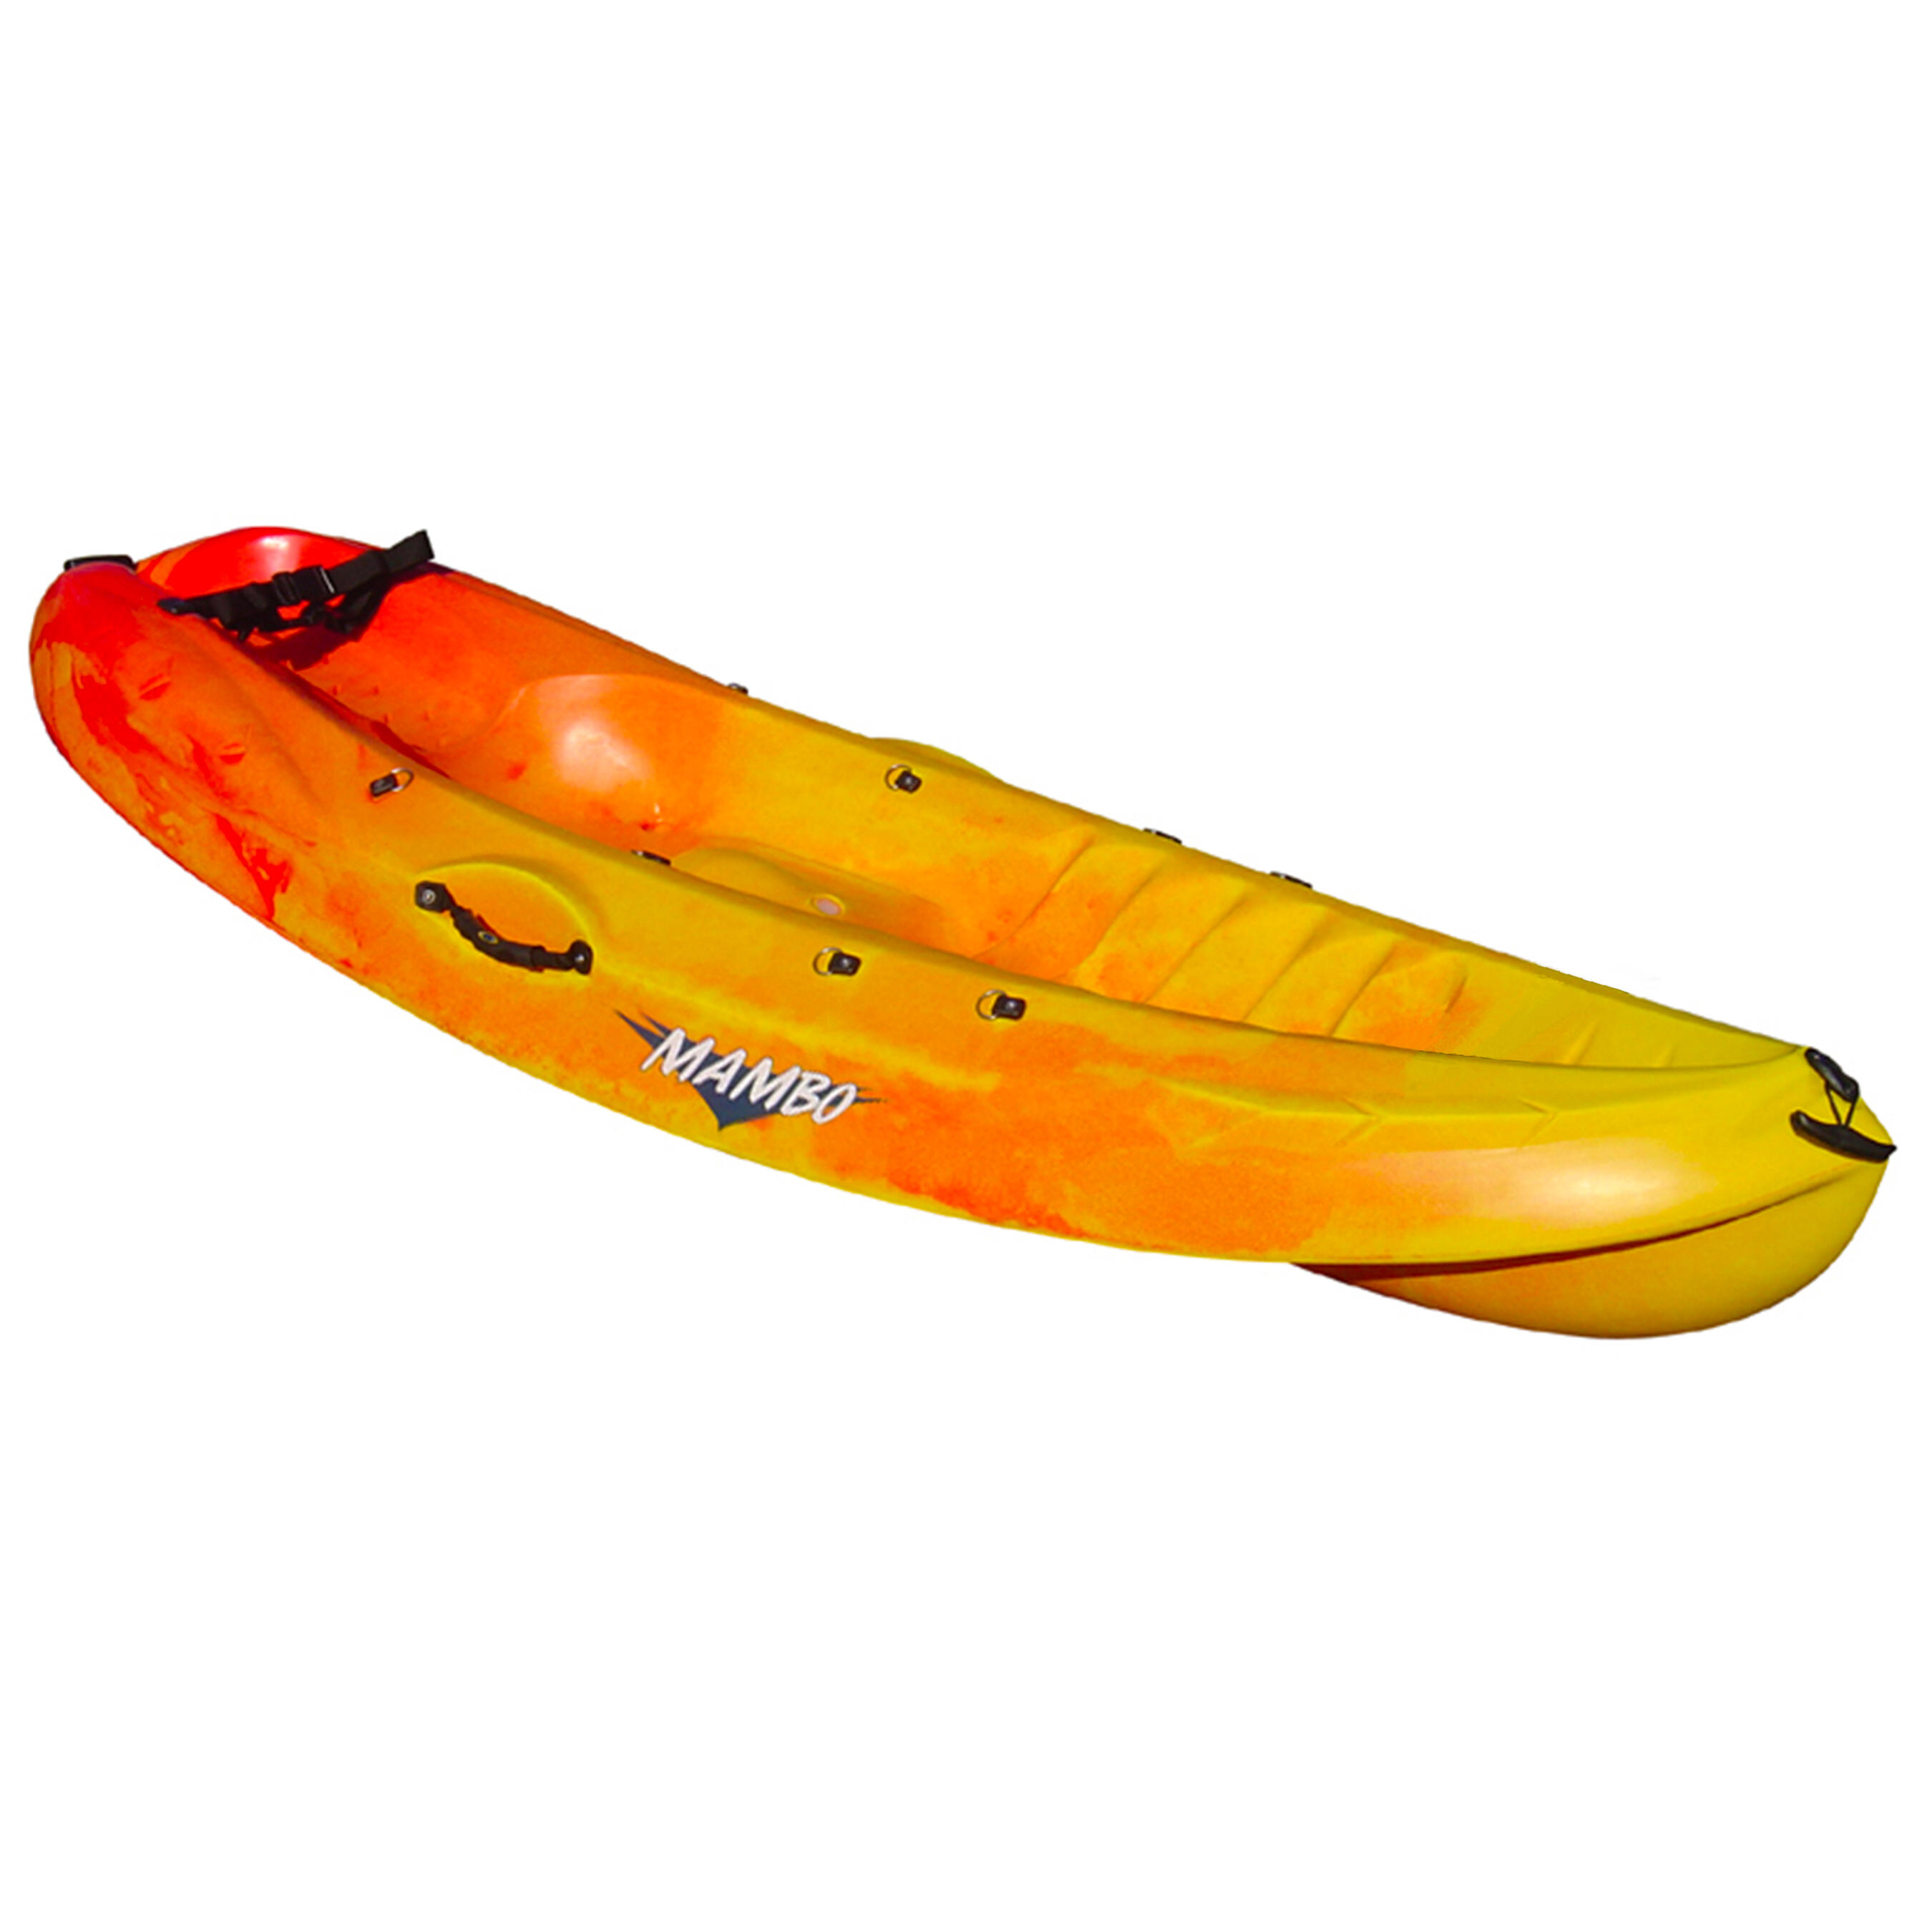 decathlon sea kayak